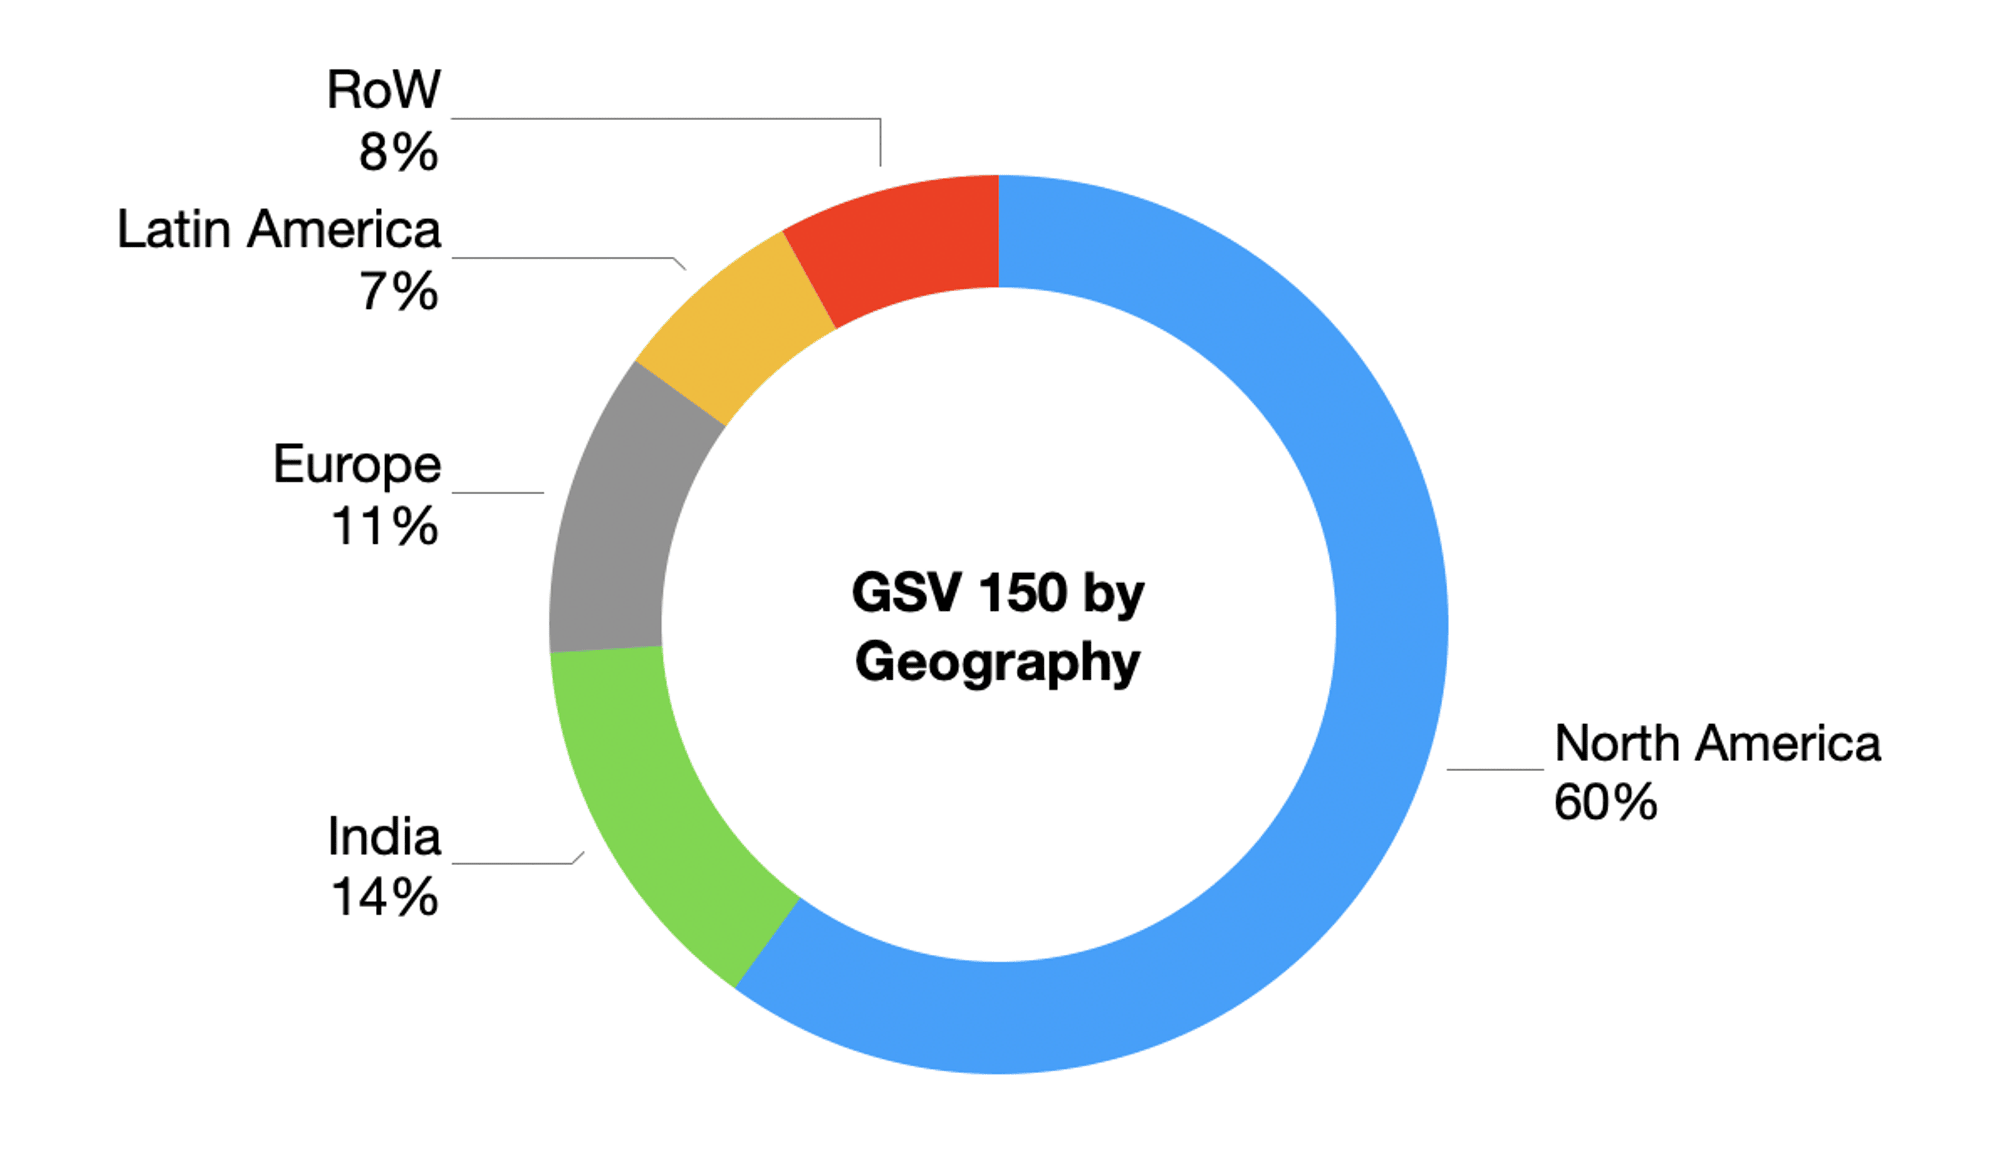 GSV 150